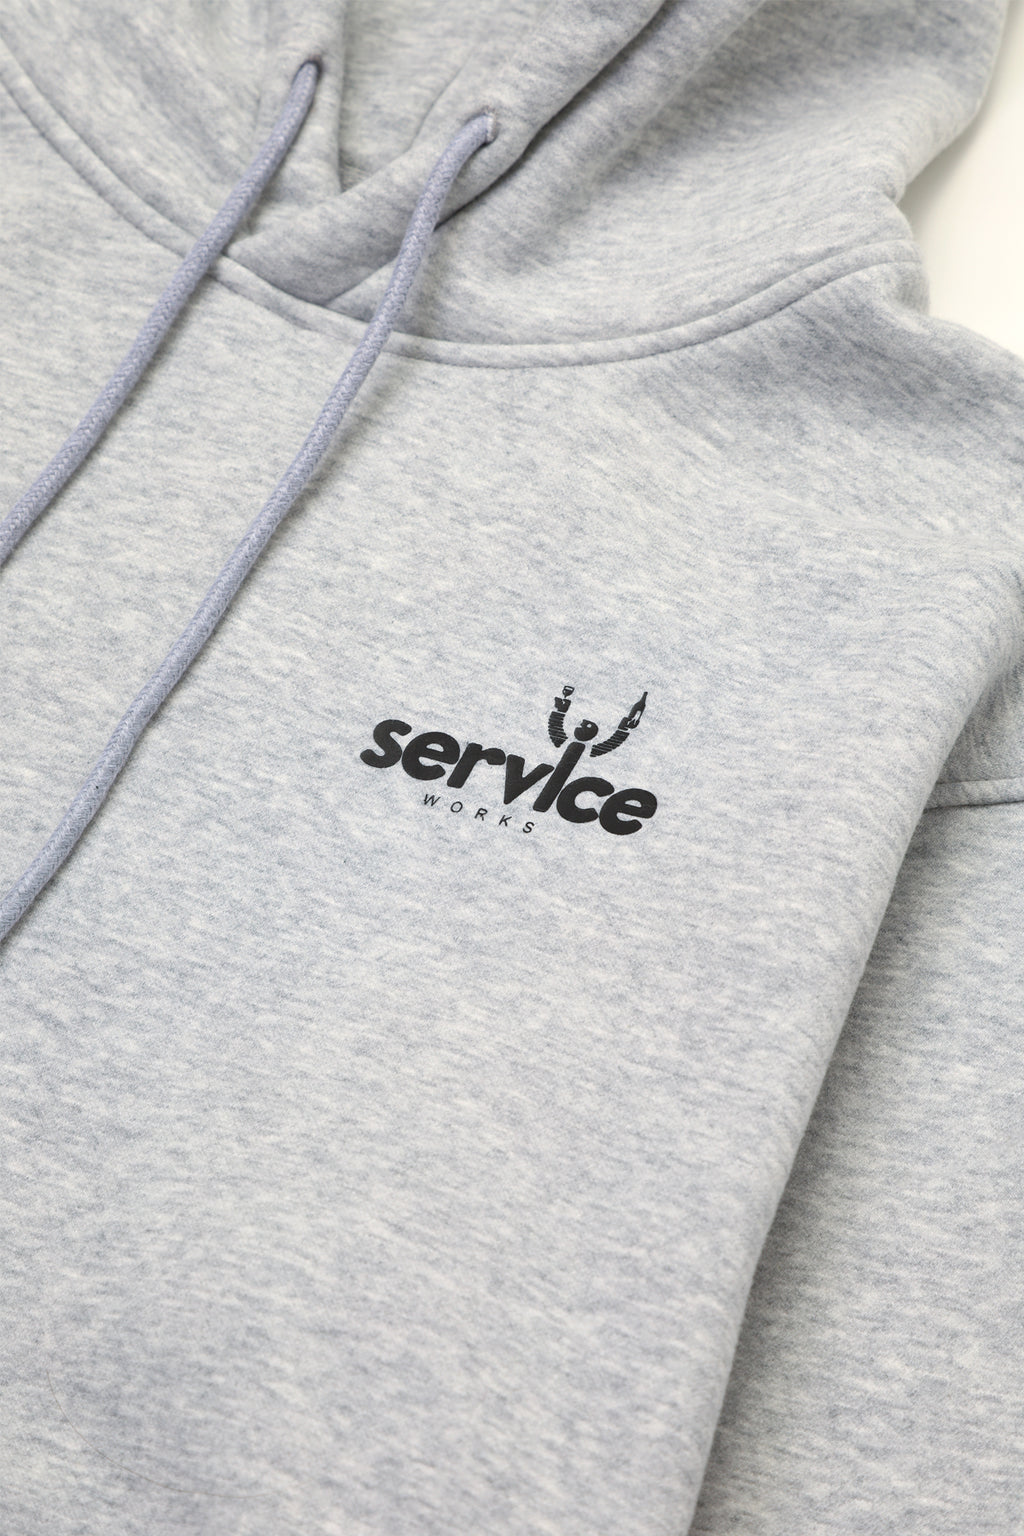 Service Works - Sommelier Hoodie - Grey